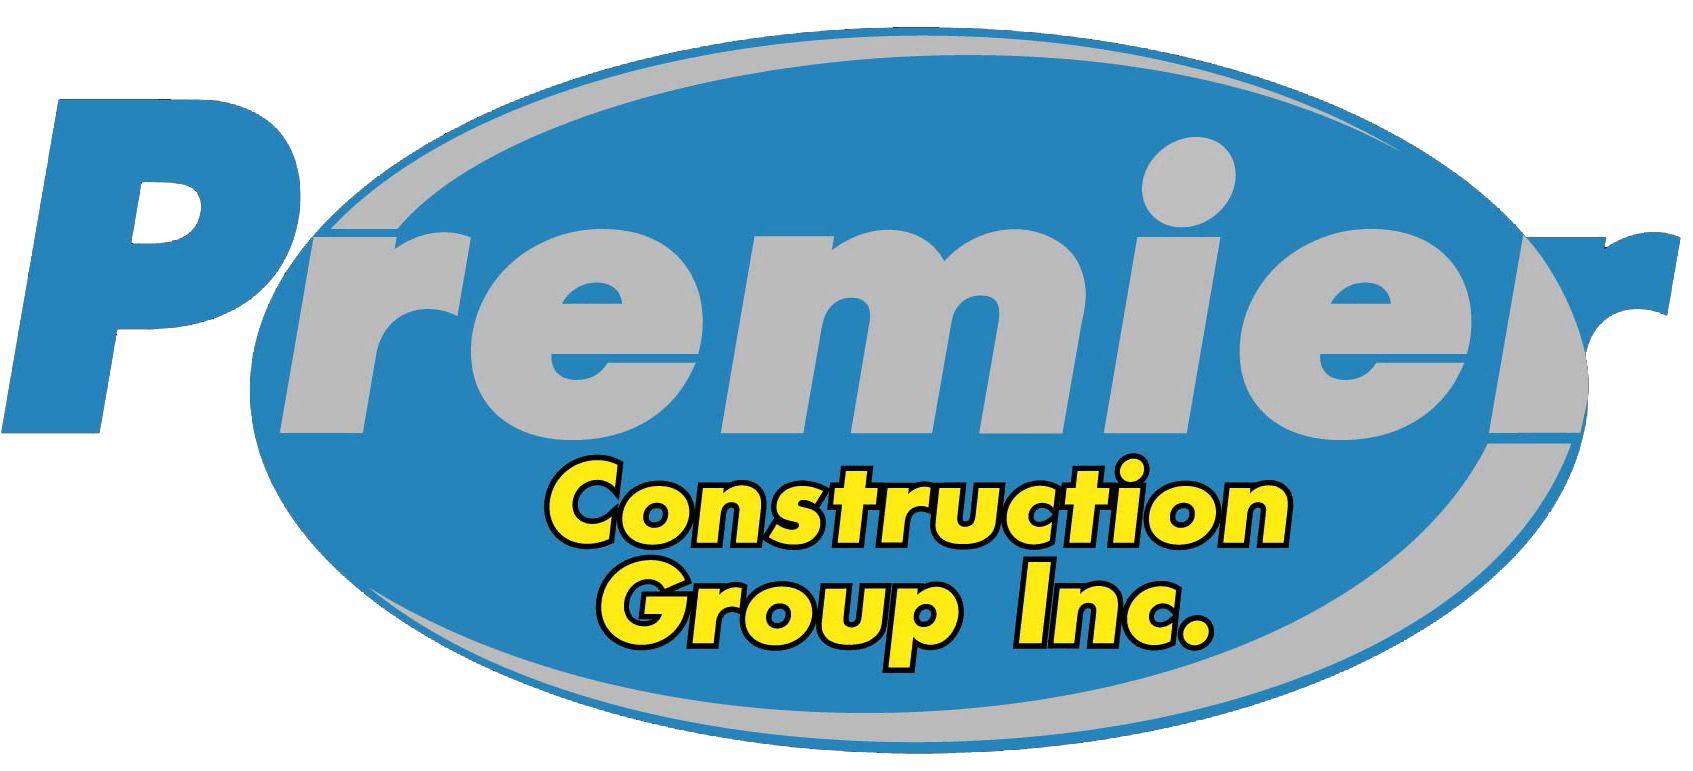 Premier Construction Group Inc - Staff Photo 2